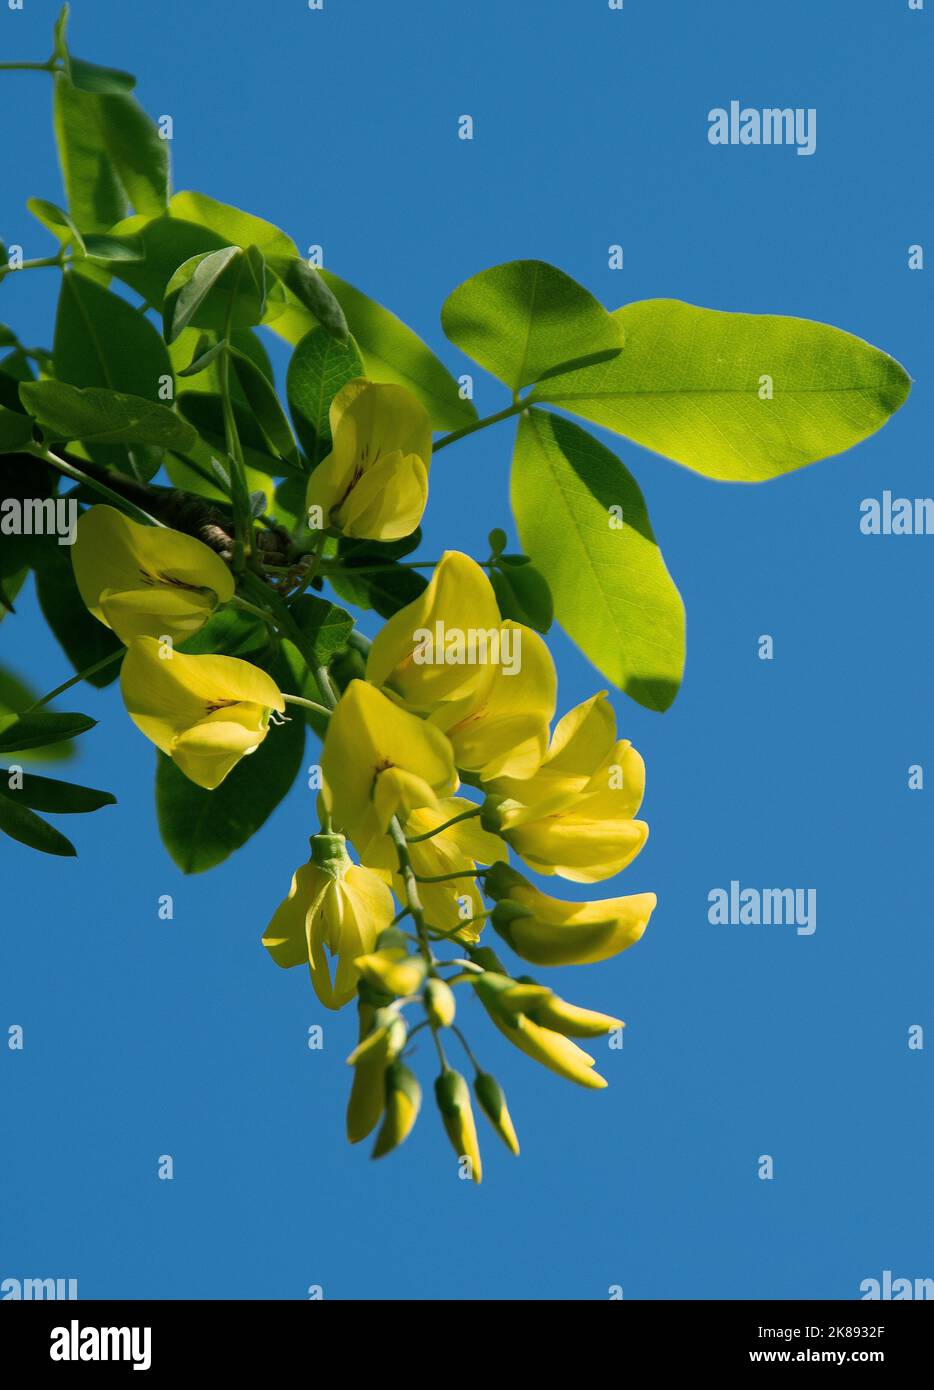 Laburnum anagyroides est un arbre décoratif avec des grappes de fleurs jaunes suspendues et des feuilles trifoliées, introduit en Angleterre en 1560 Banque D'Images